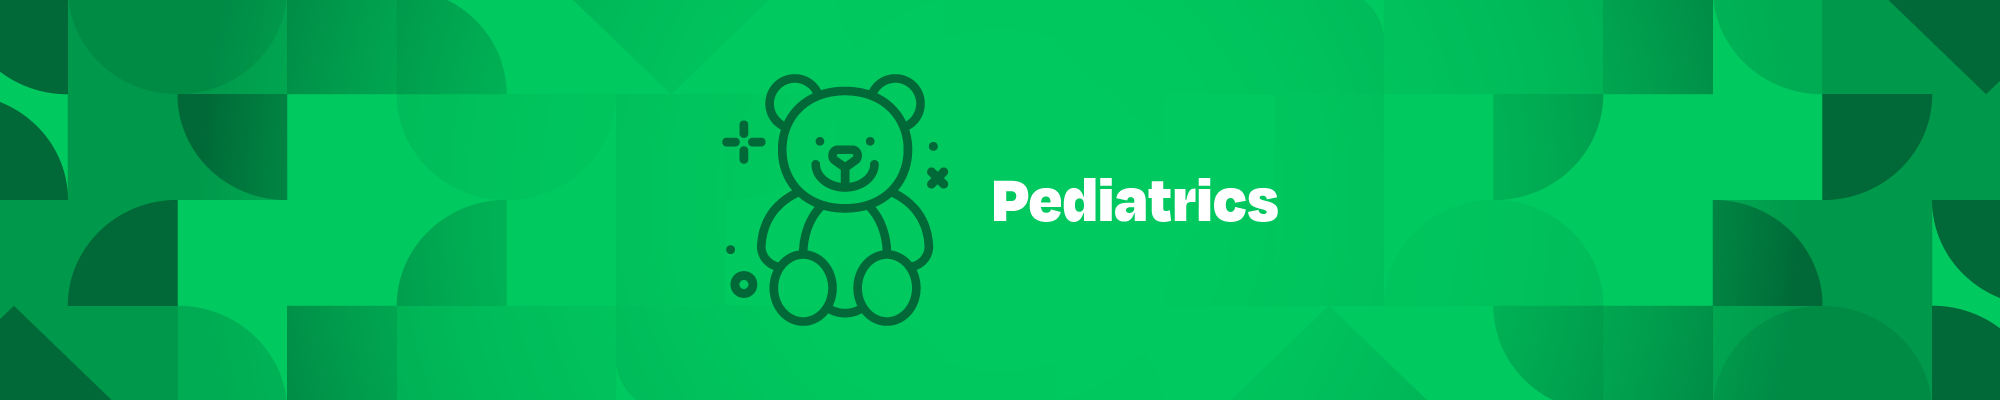 Pediatrics - Newsletter